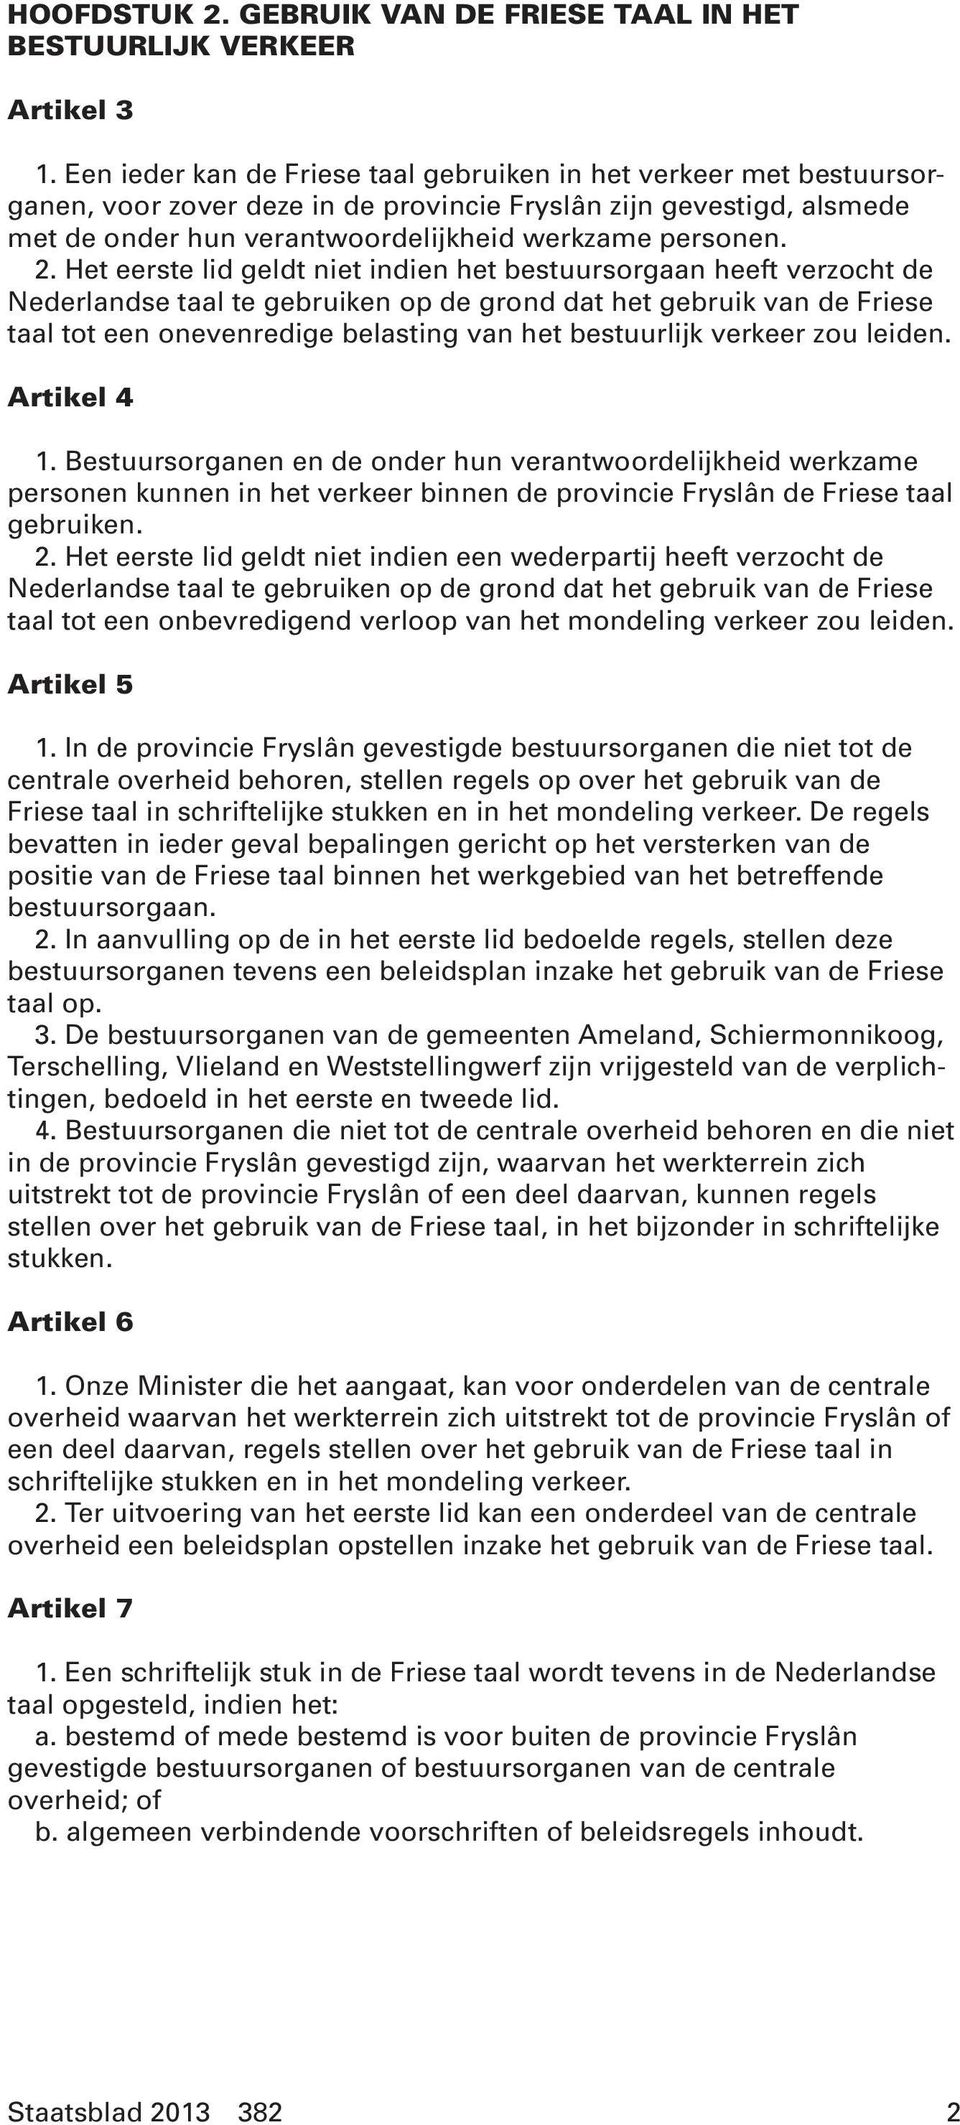 Het eerste lid geldt niet indien het bestuursorgaan heeft verzocht de Nederlandse taal te gebruiken op de grond dat het gebruik van de Friese taal tot een onevenredige belasting van het bestuurlijk